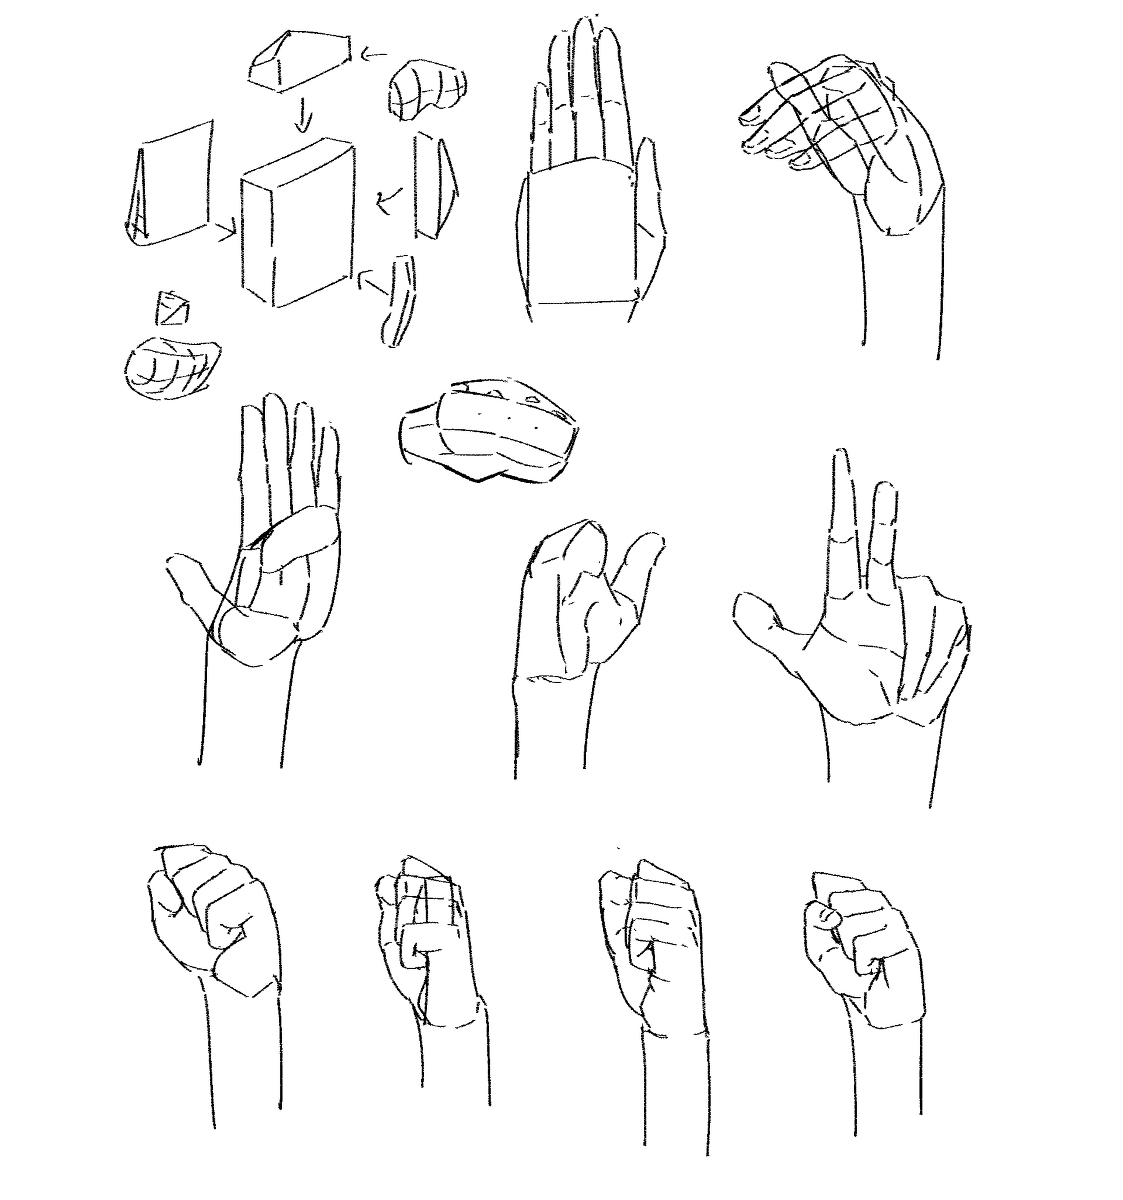 手を描く (hands drawing practice 1) #hands #fingers #anatomy #training #practice #grayscale #human #body https://t.co/7sWLR9TUIT 